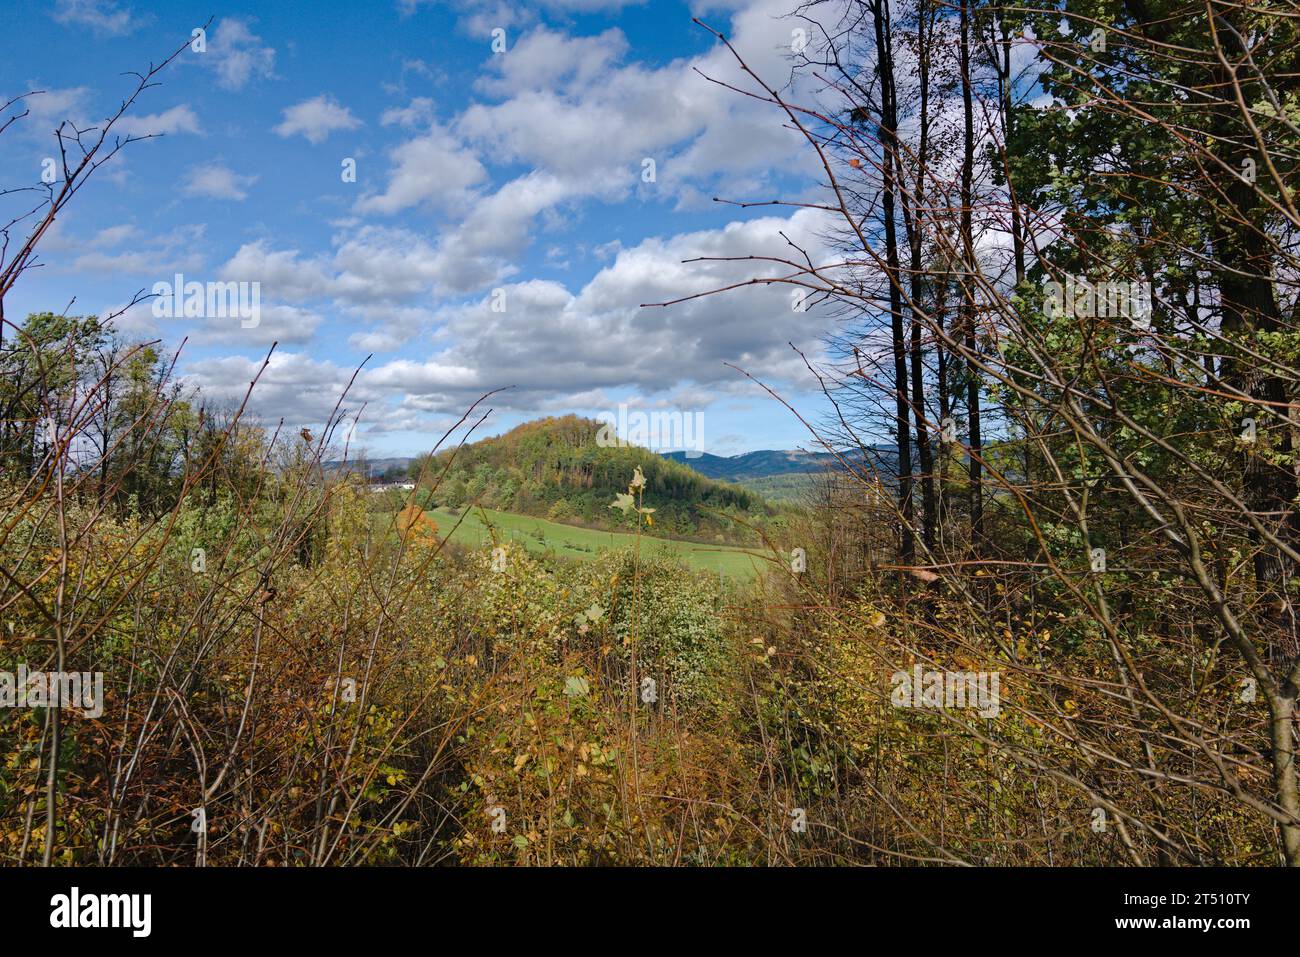 Hradisko Hügel in Roznov Pod Radhostem, eine schöne kleine Stadt in Tschechien. Landschaft mit Feldern, Weiden und Wiesen und wolkenblauem Himmel. Sonniger Autom Stockfoto